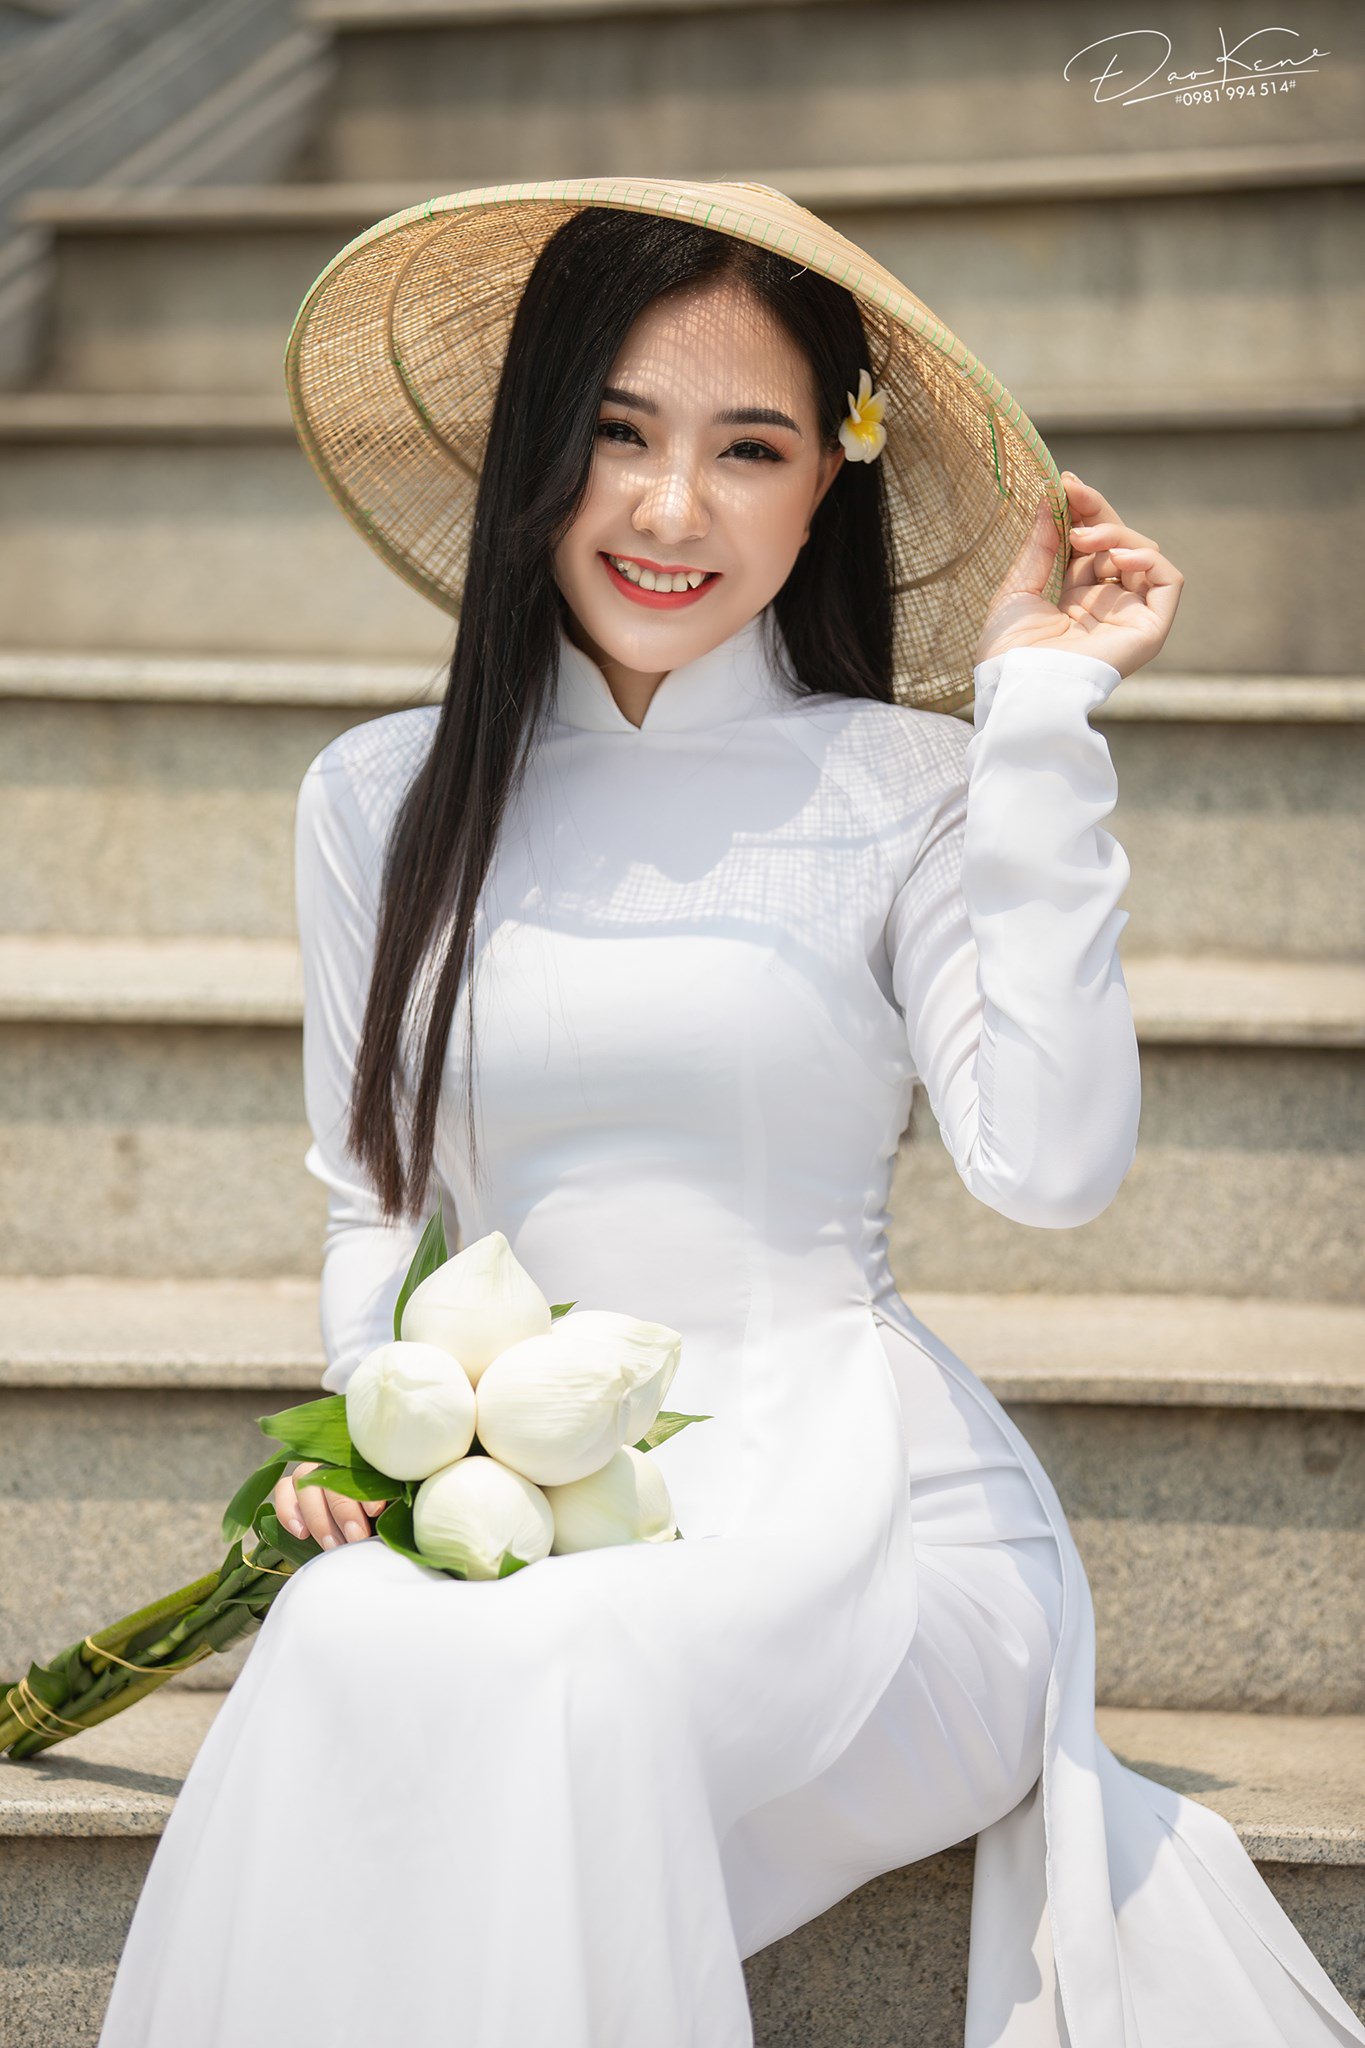 Tuyển tập girl xinh gái đẹp Việt Nam mặc áo dài đẹp mê hồn #55 - 10